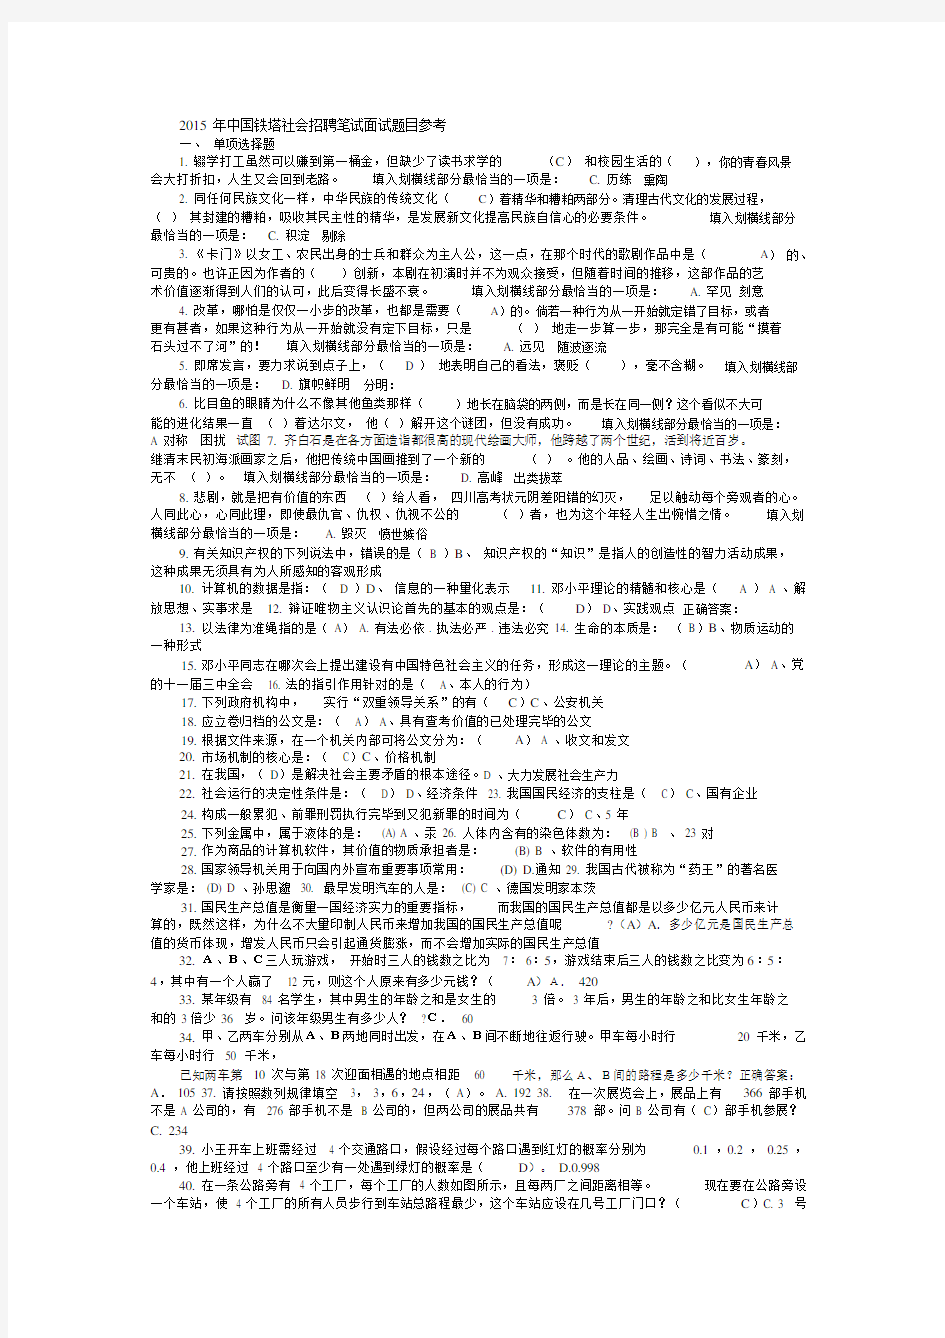 2015年中国铁塔社会招聘笔试面试题目参考